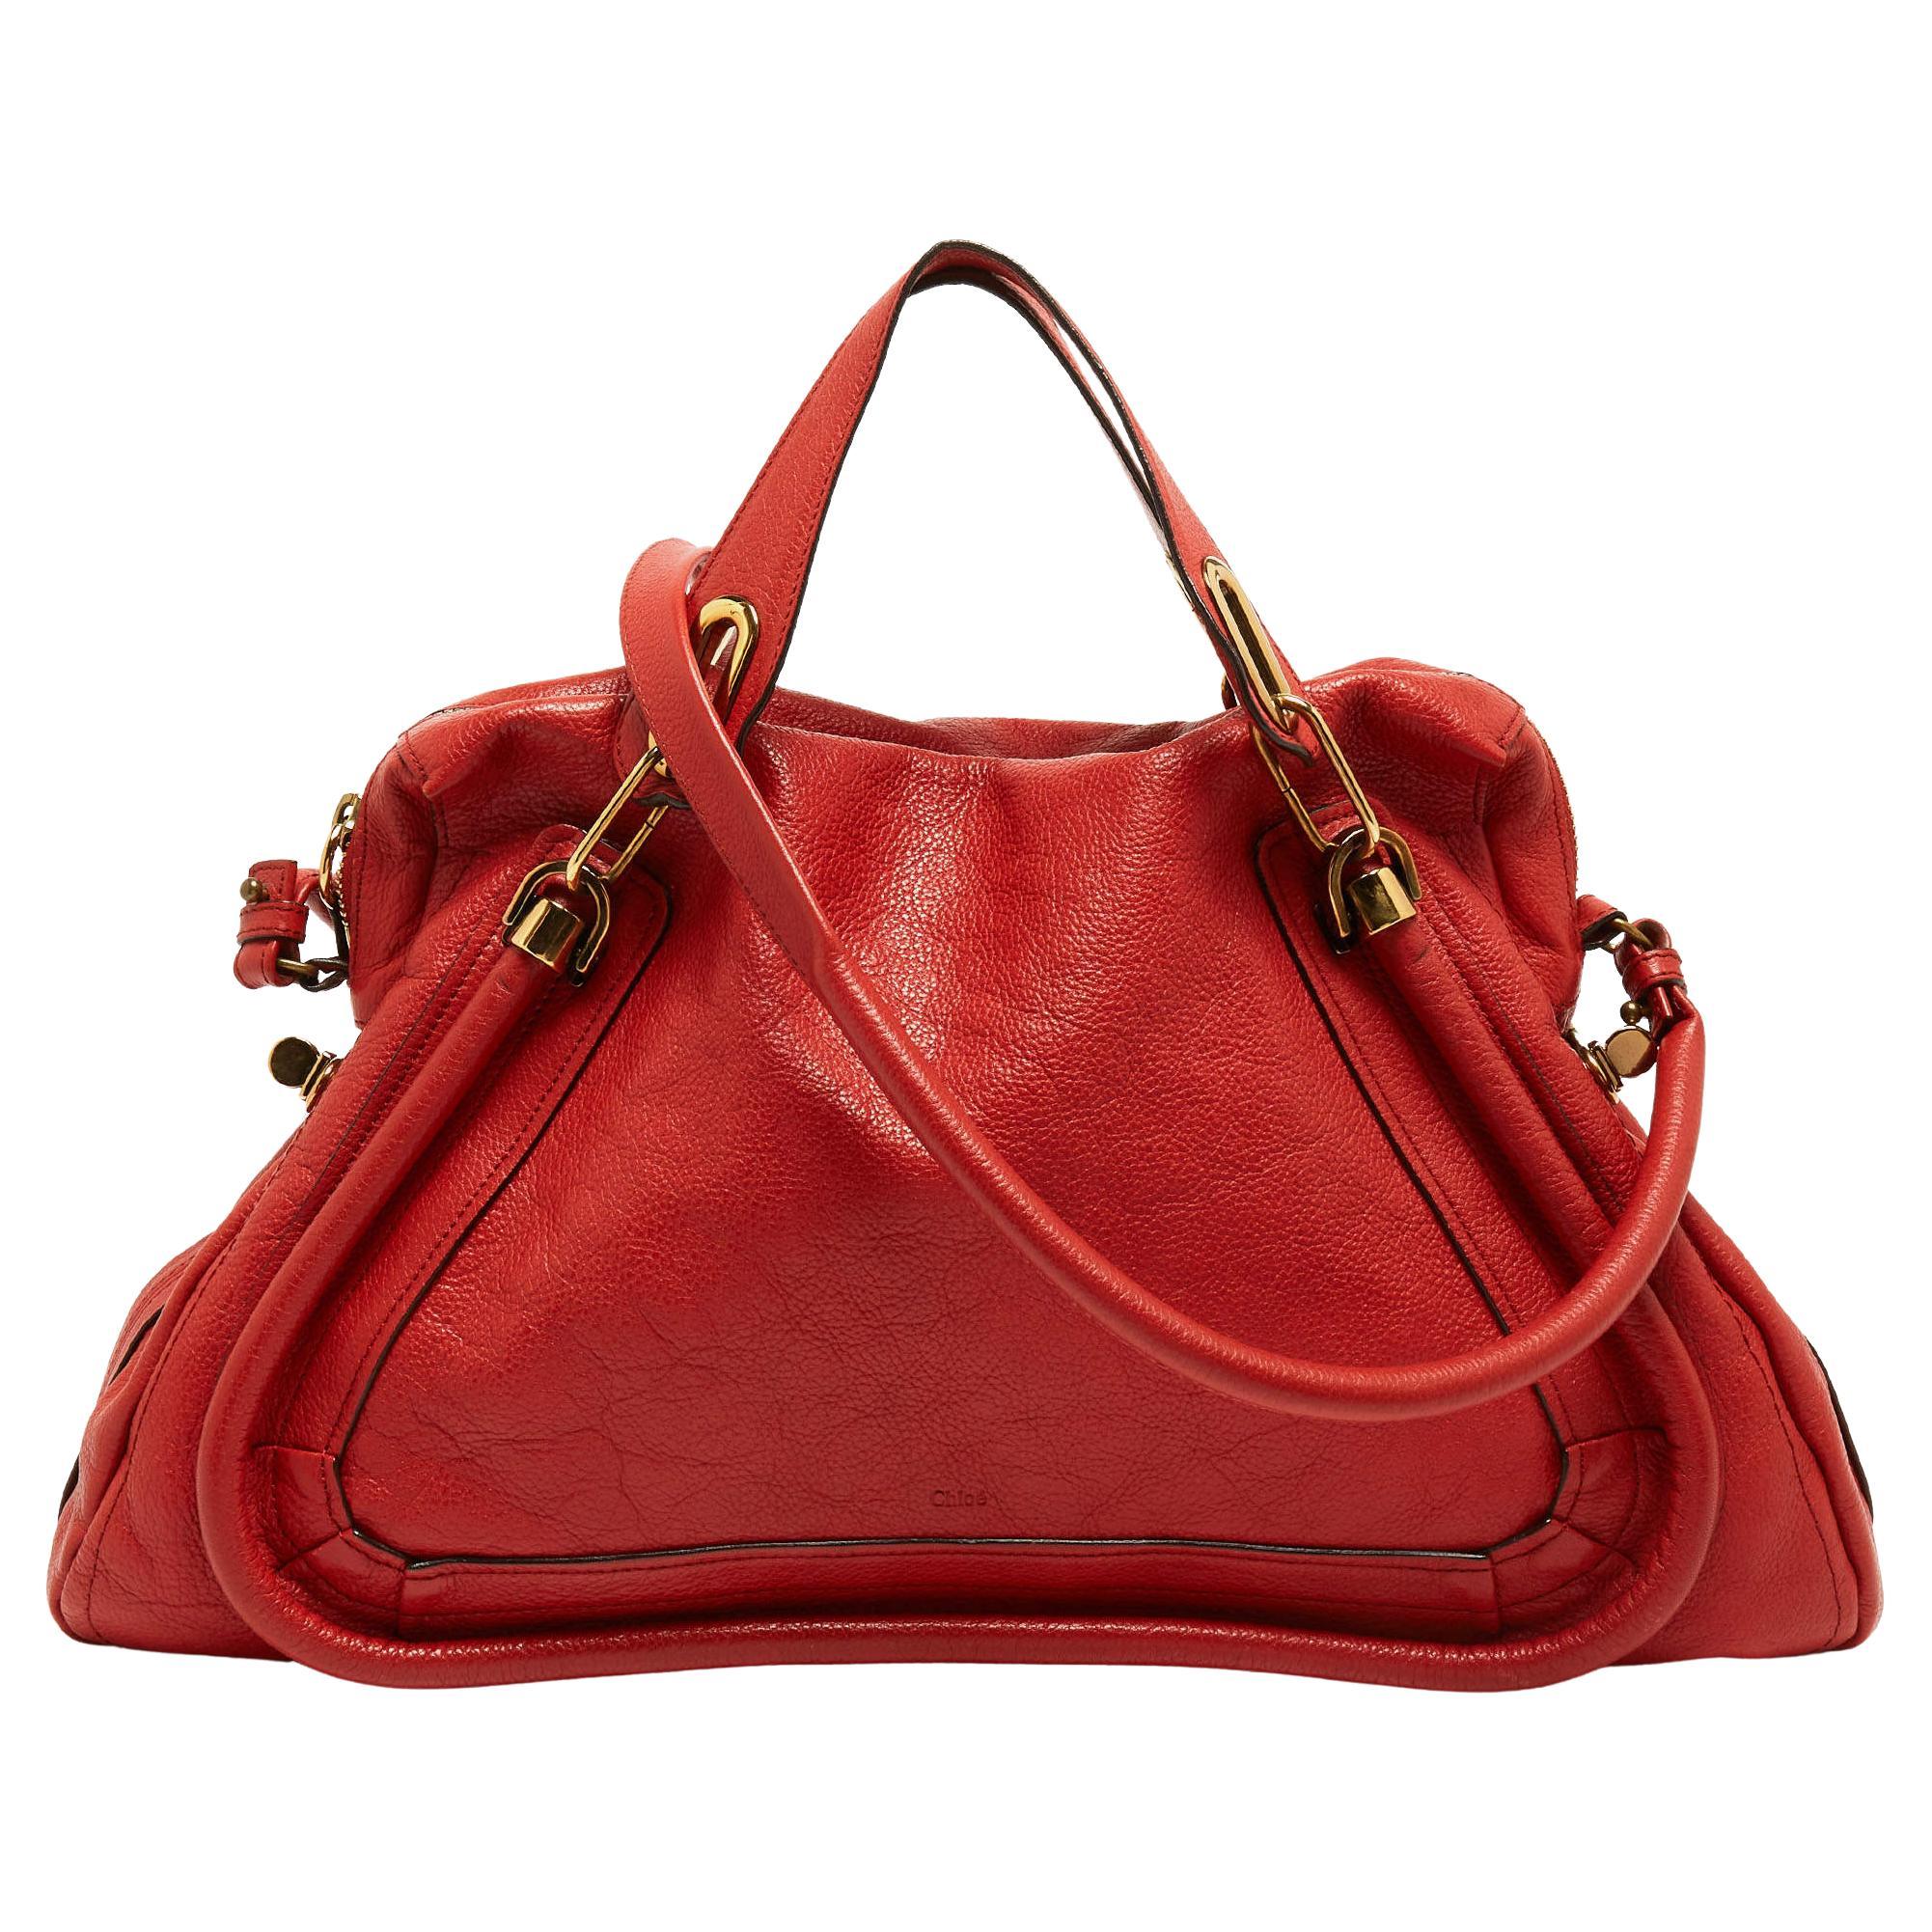 Chloe Brick Red Leather Large Paraty Shoulder Bag For Sale